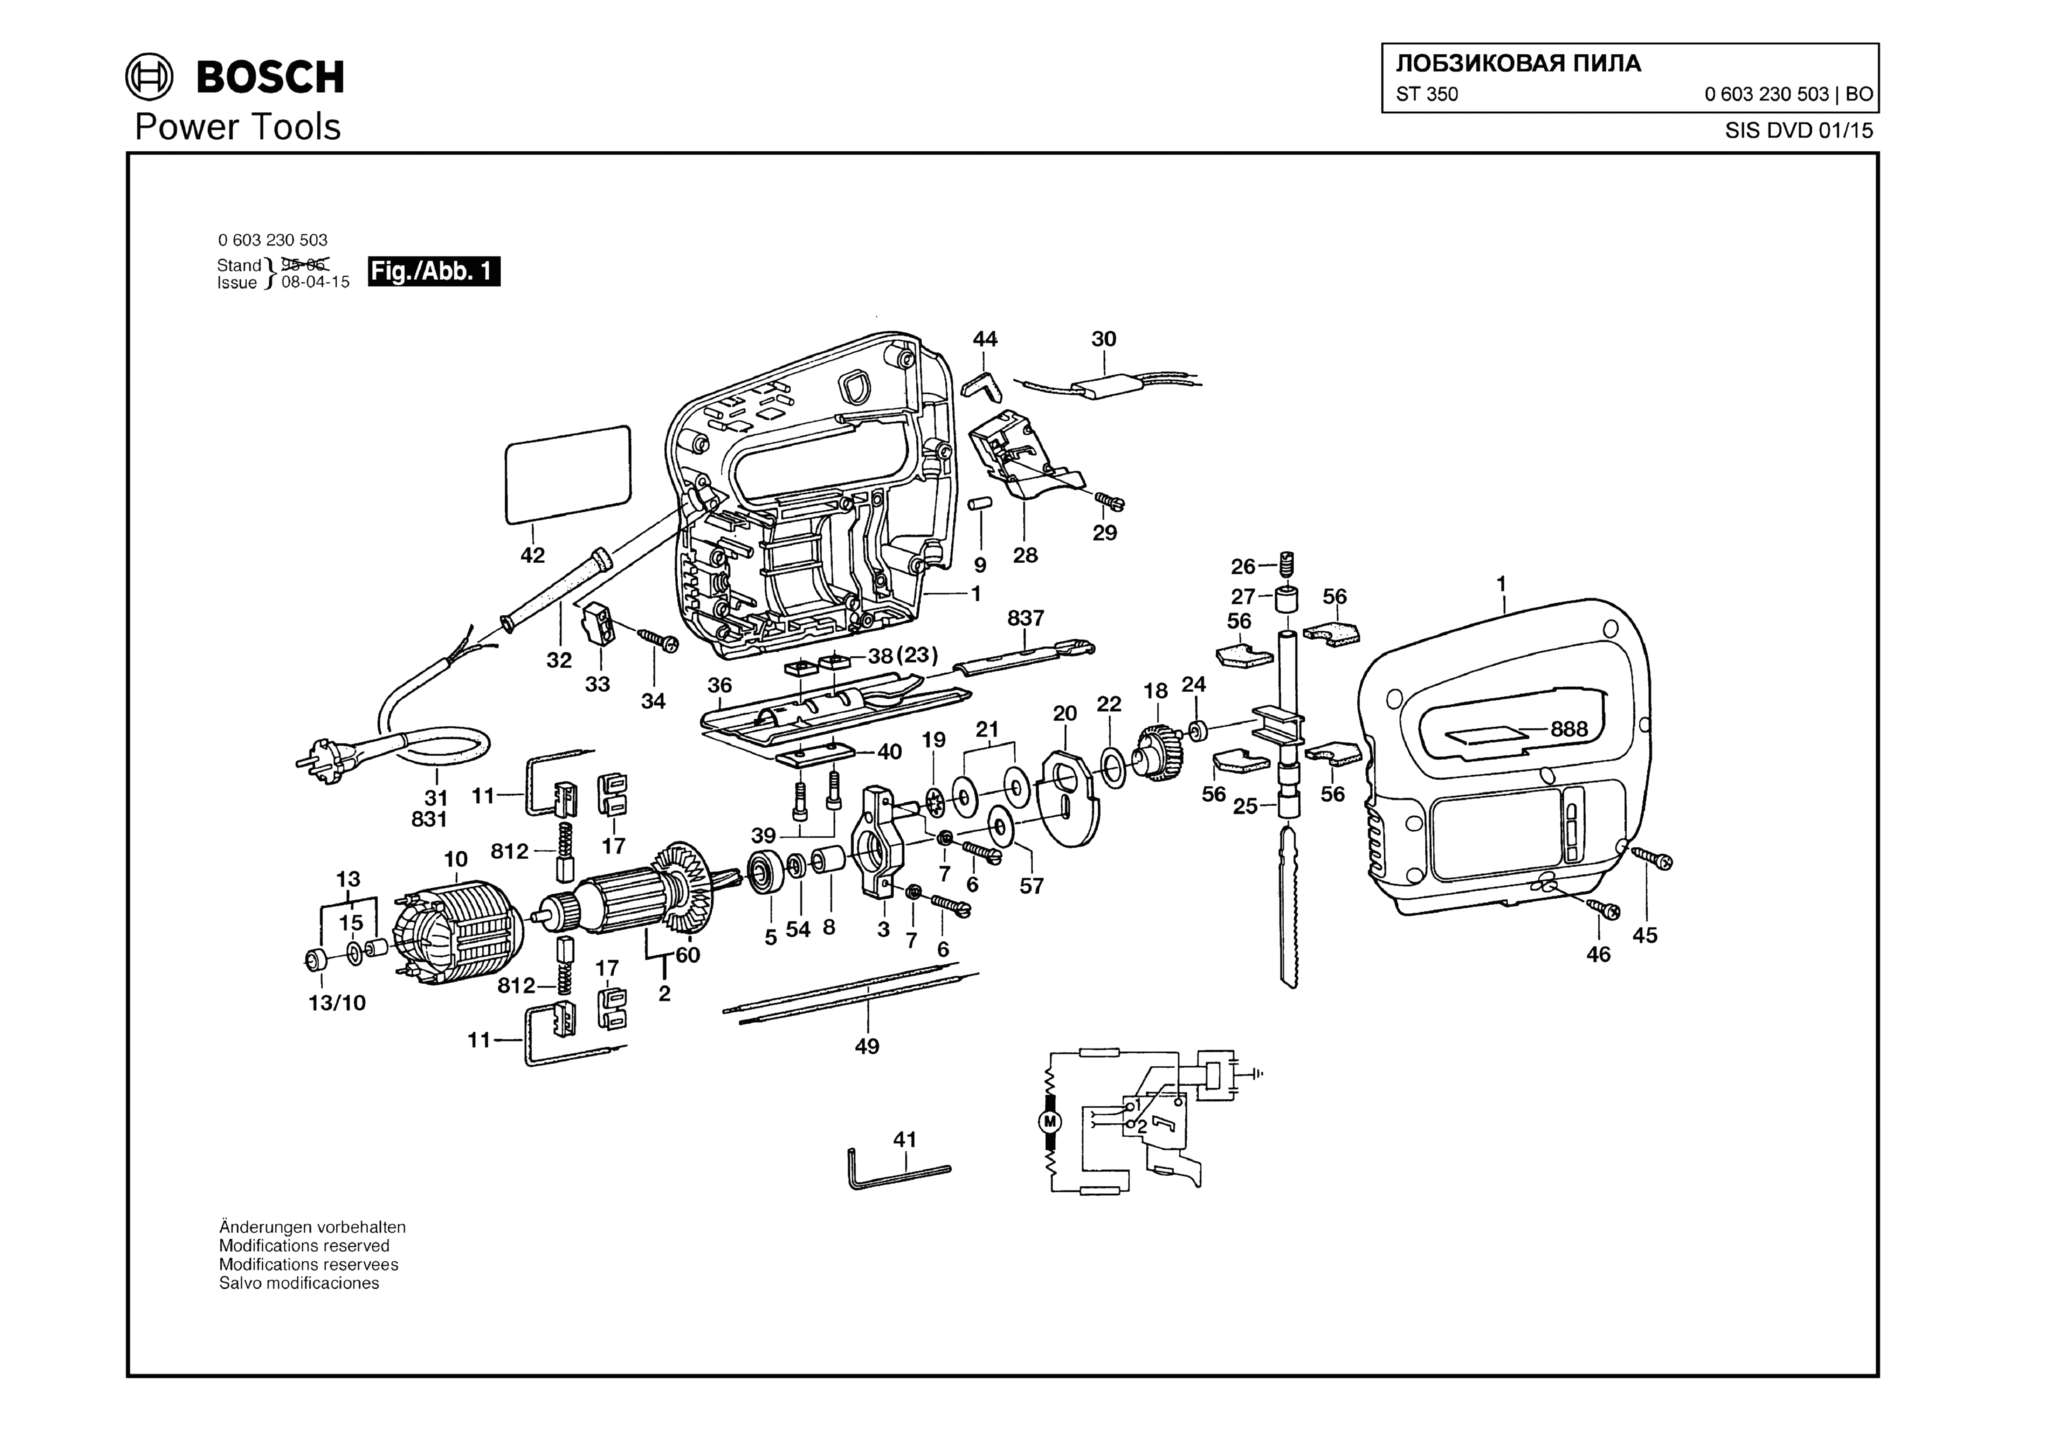 Запчасти, схема и деталировка Bosch ST 350 (ТИП 0603230503)